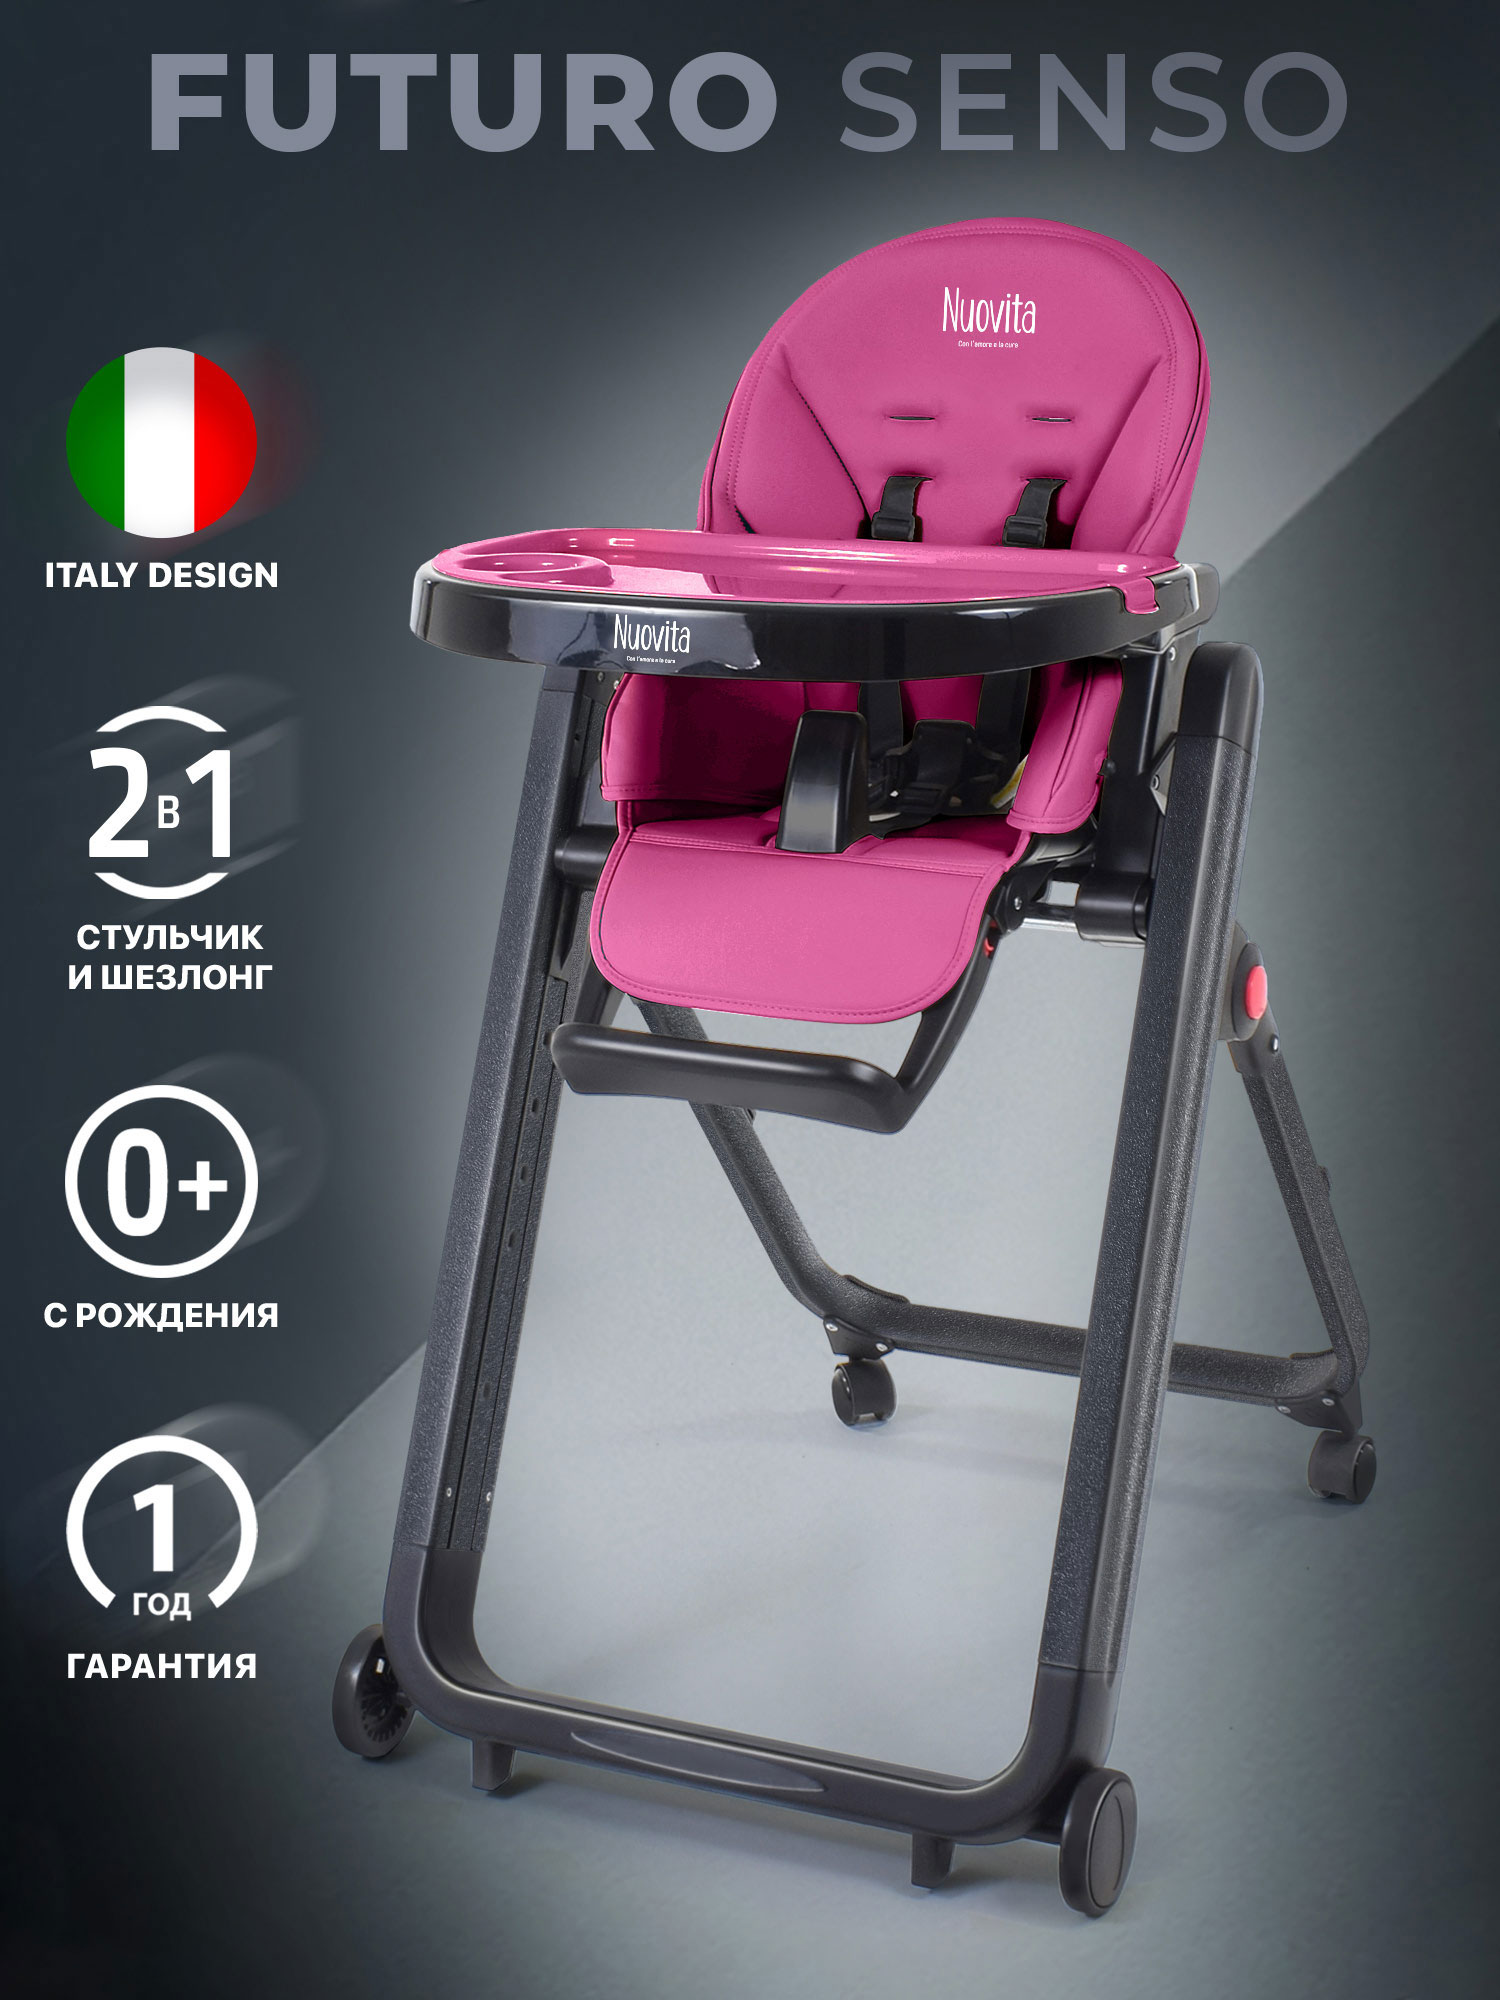 Стульчик для кормления Nuovita Futuro Senso Nero (Magenta/Пурпурный) стульчик для кормления nuovita grande magenta пурпурный